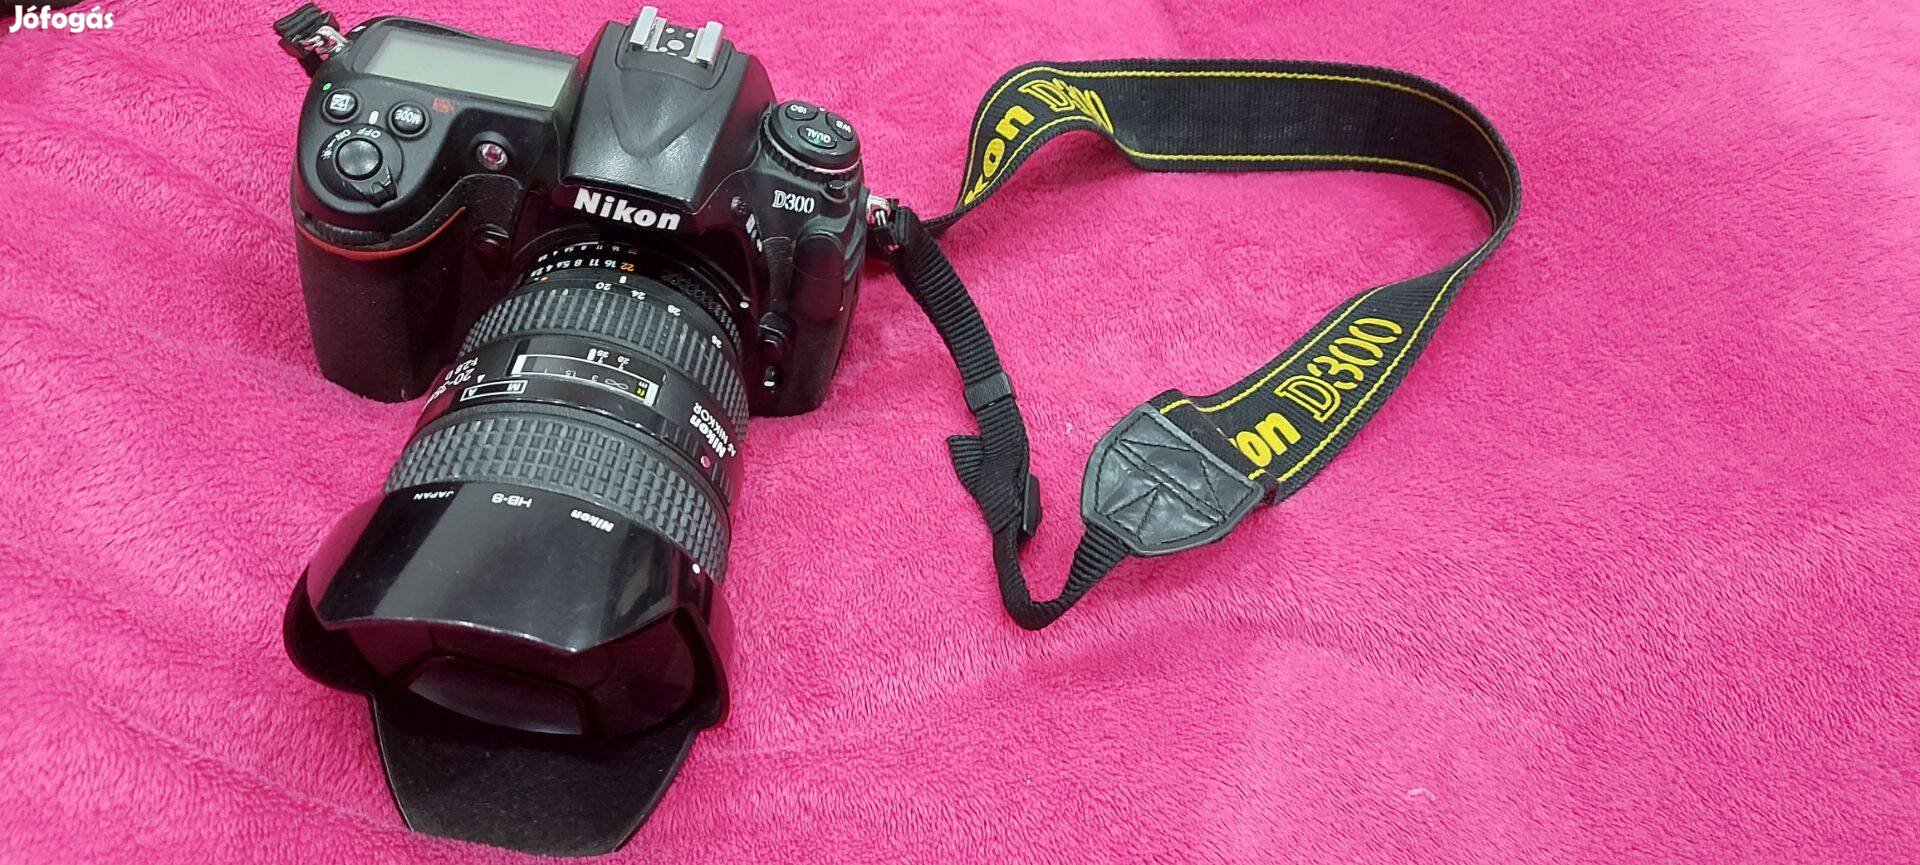 Eladó Nikon D300-as tükörreflexes fényképezőgép